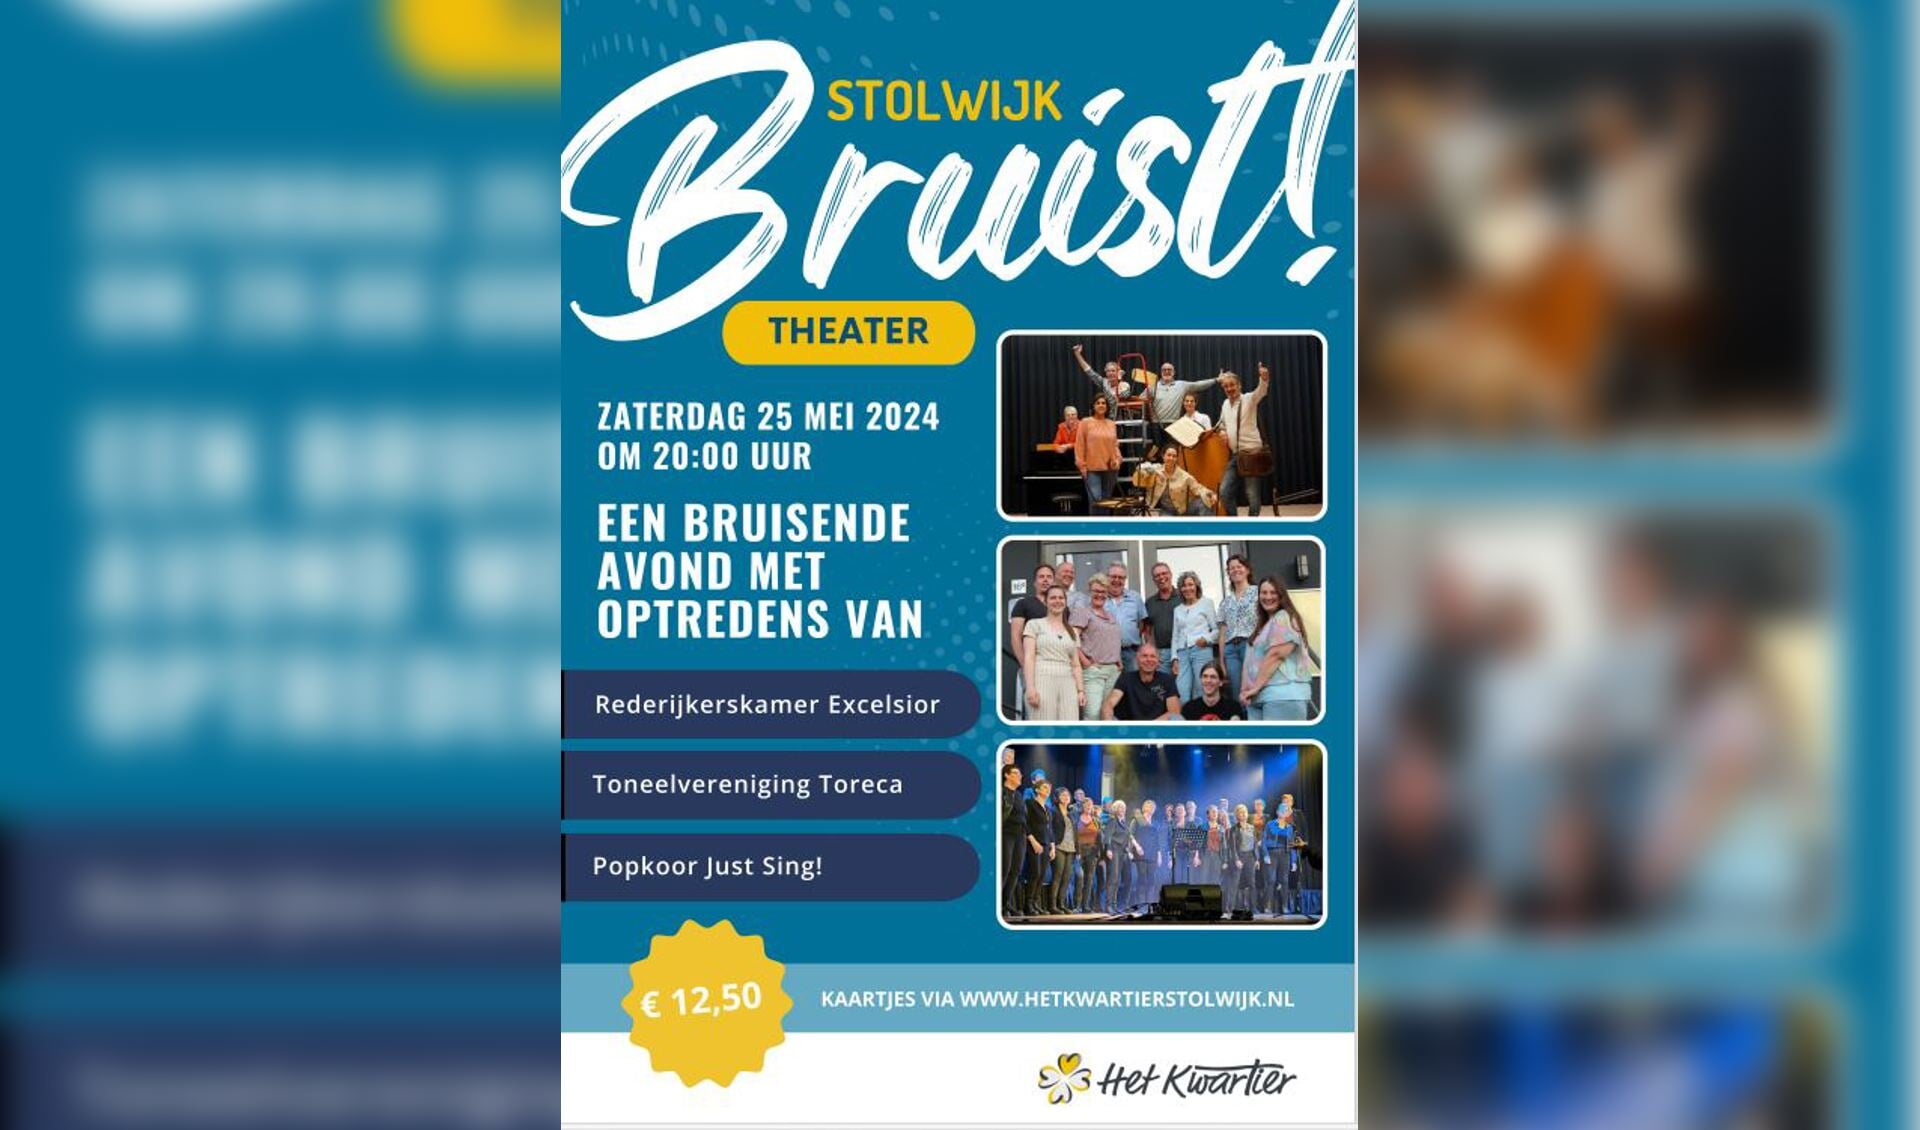 Stolwijk Bruist Theater! op 25 mei in Het Kwartier